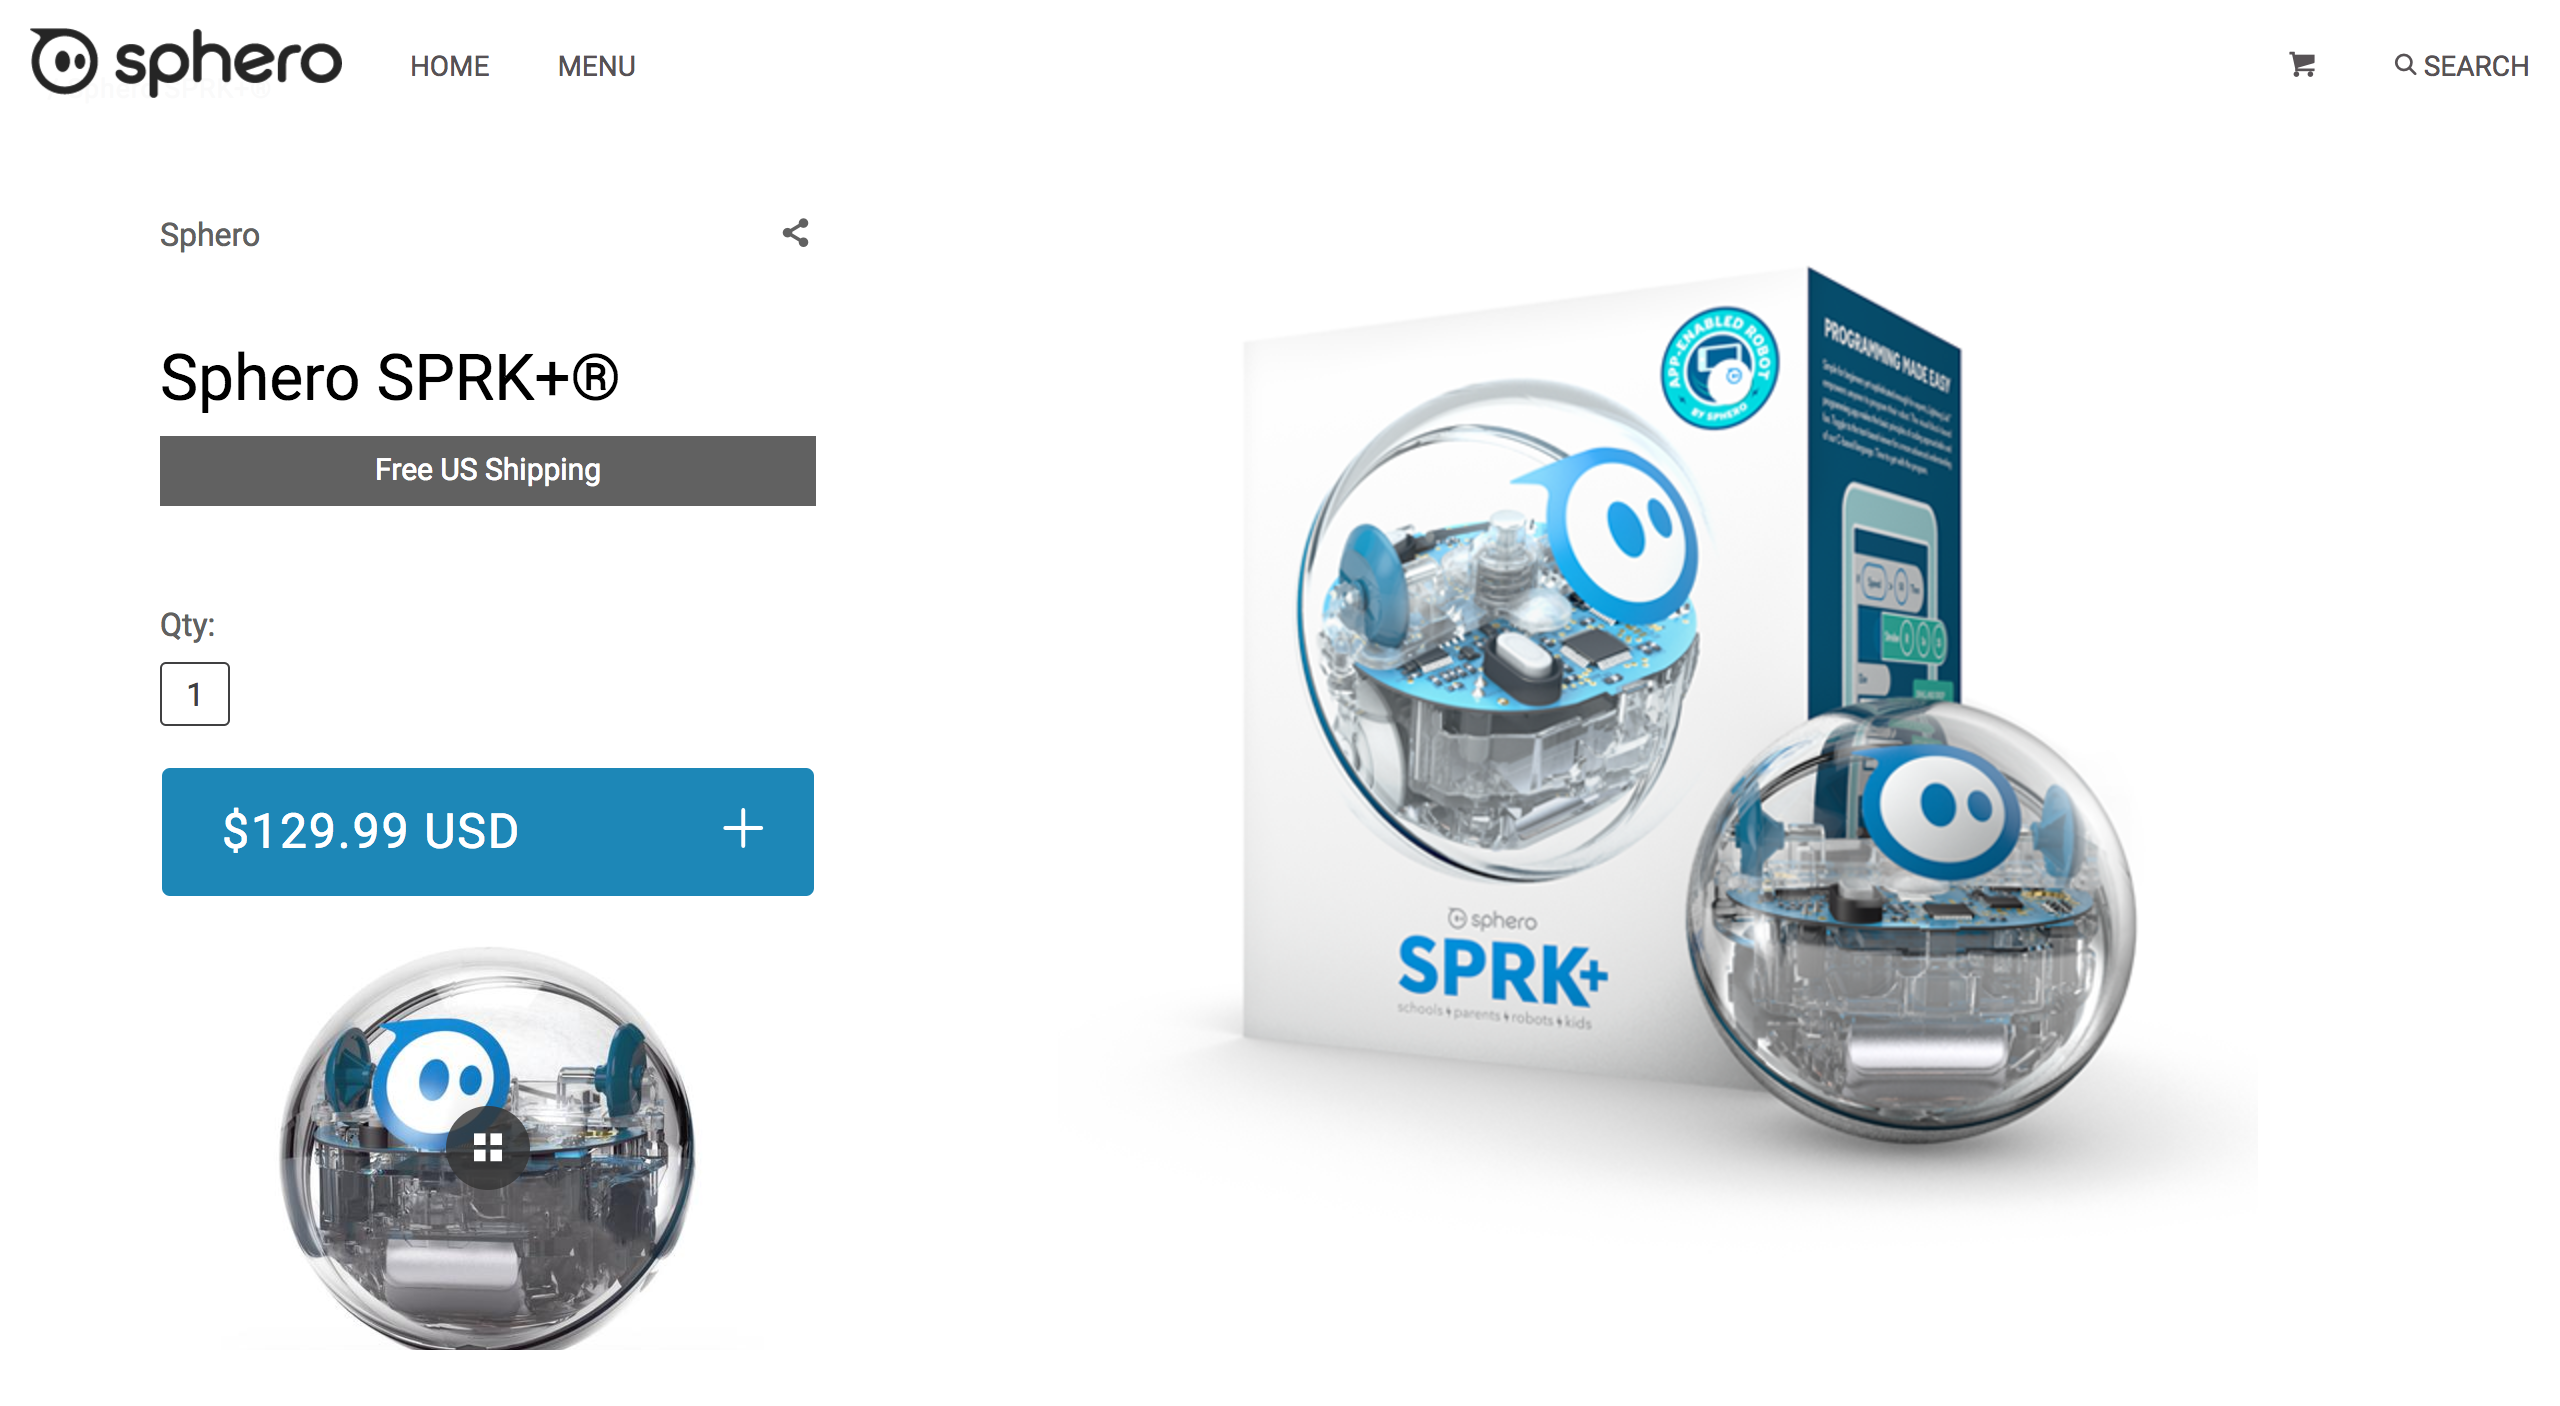 FireShot Capture 270 - Sphero SPRK+® – Sphero Store - https___store.sphero.com_products_sprk-plus